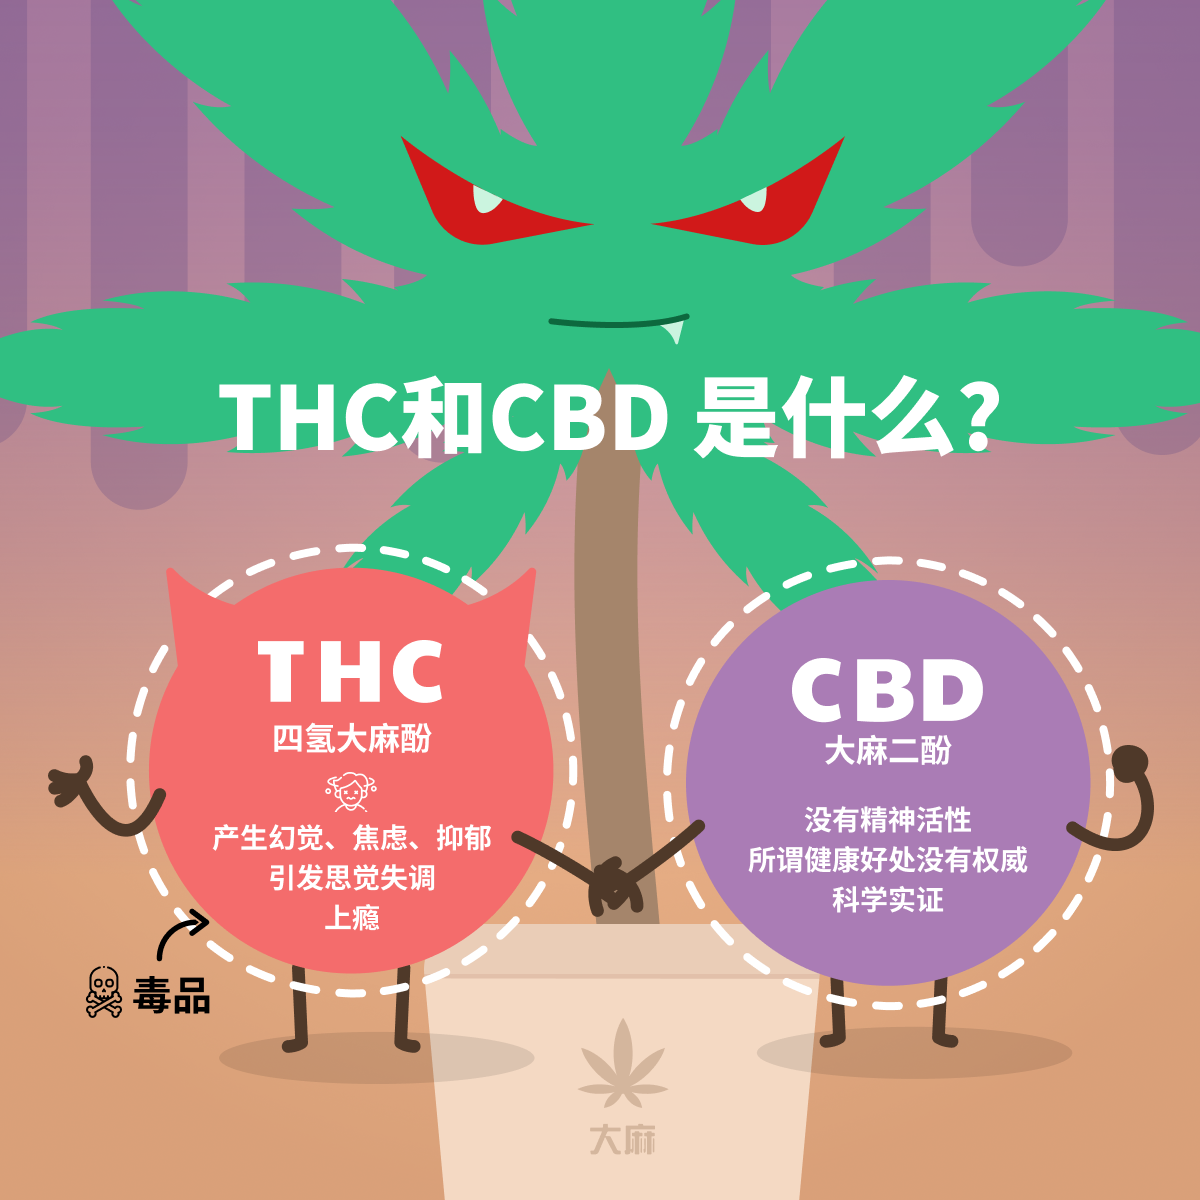 THC 和 CBD 是什么?